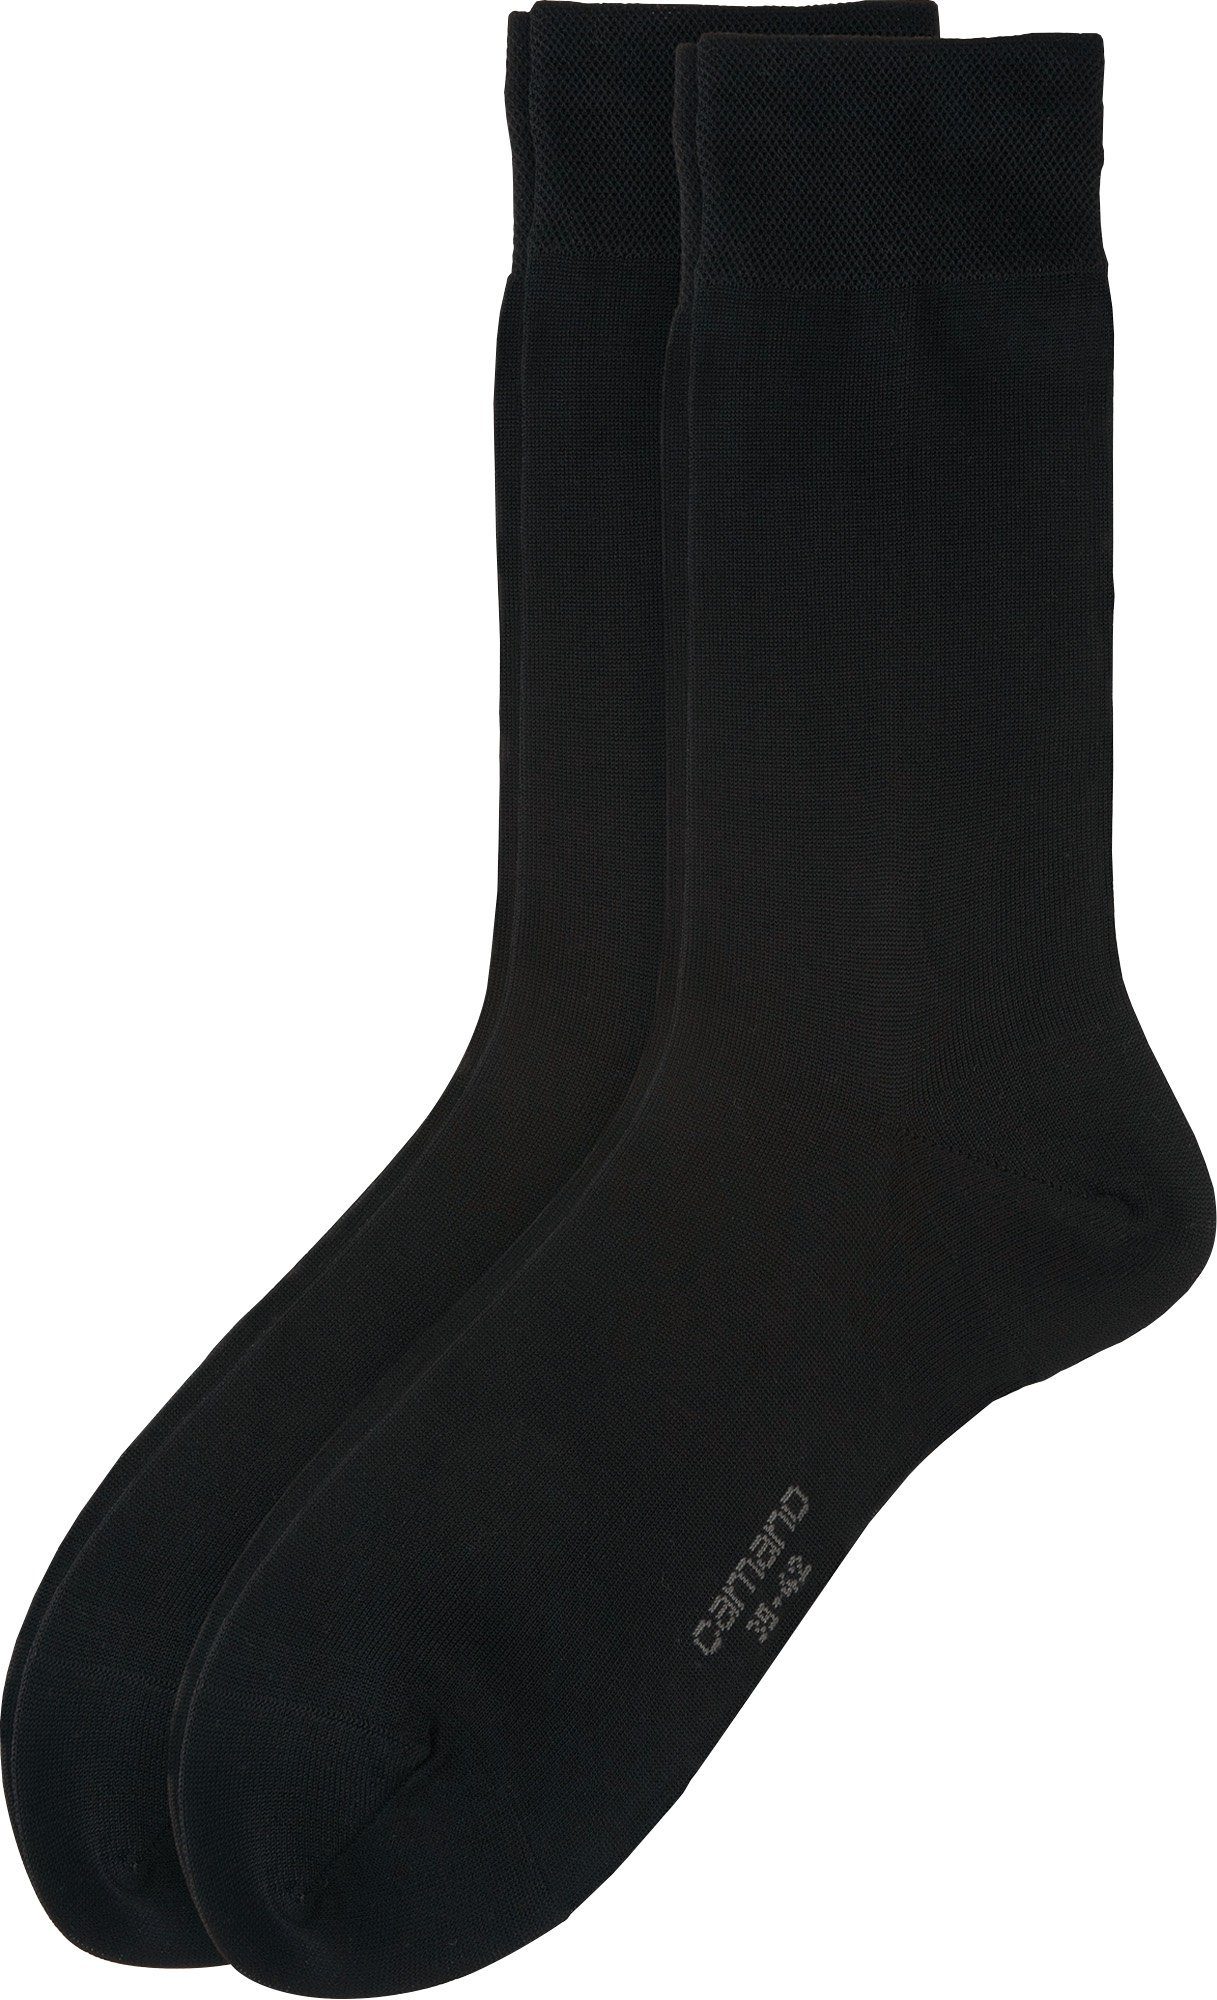 Herren Camano Business-Socken Paar 2 Socken Uni